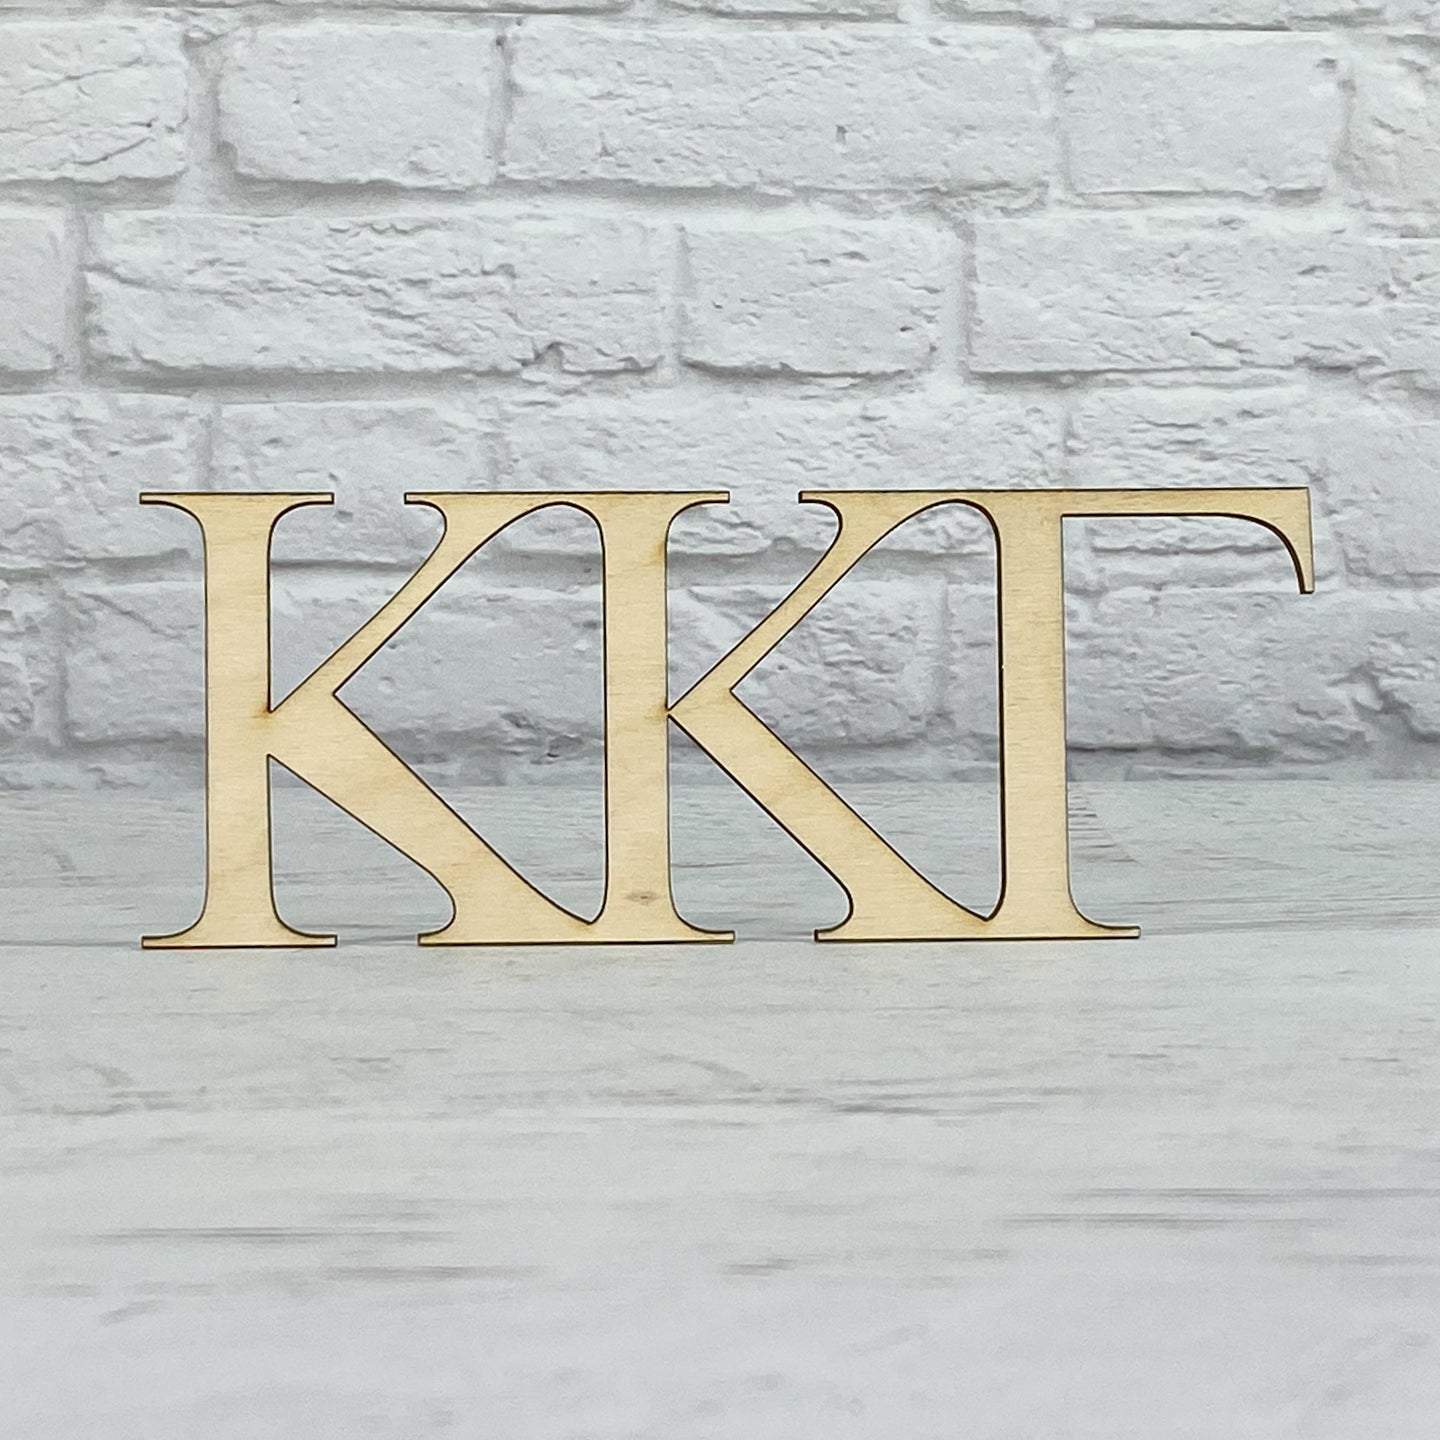 Kappa Kappa Gamma - Wood Letters